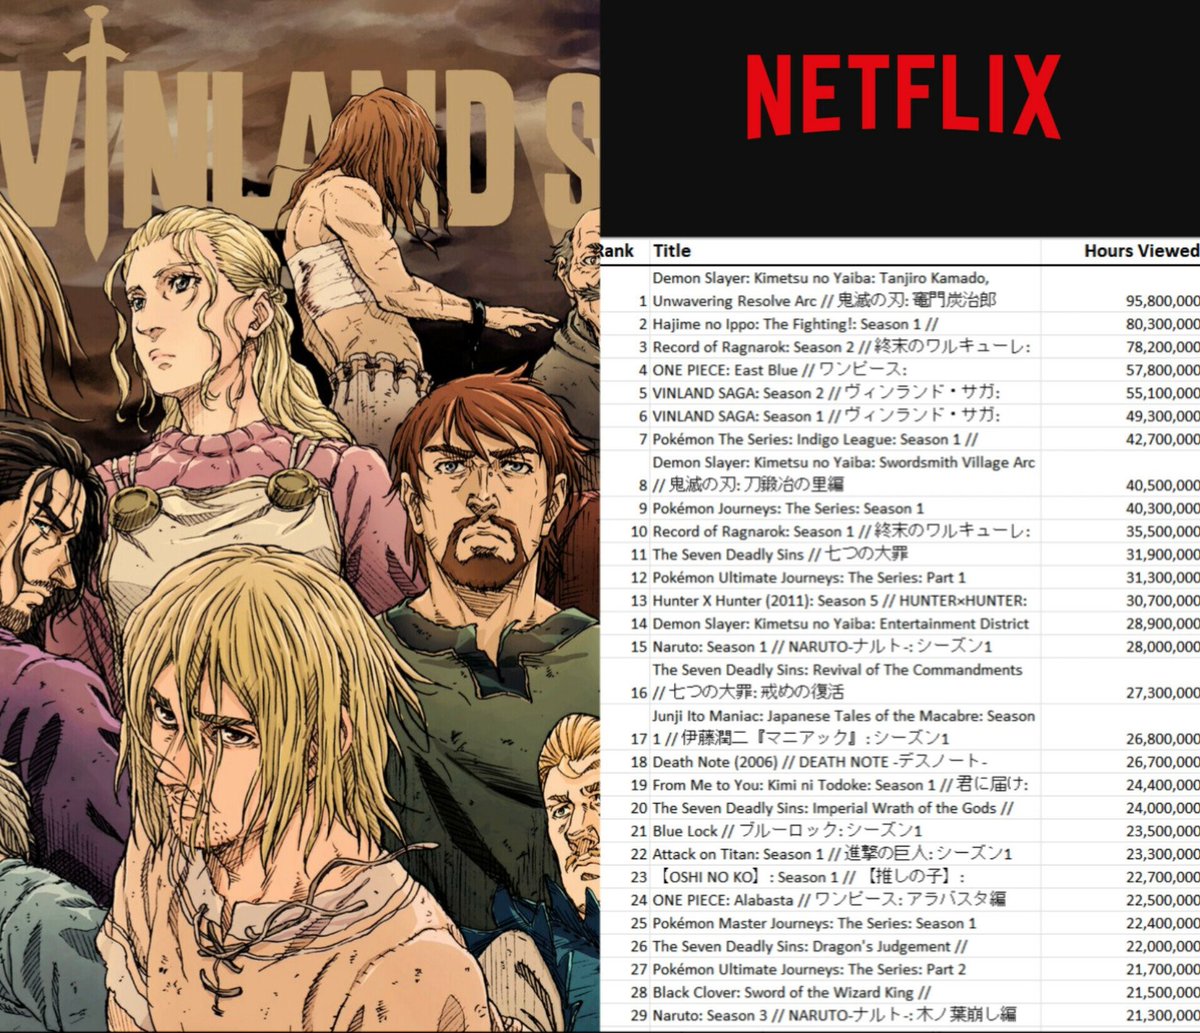 Vinland Saga  2ª temporada ganha novo visual